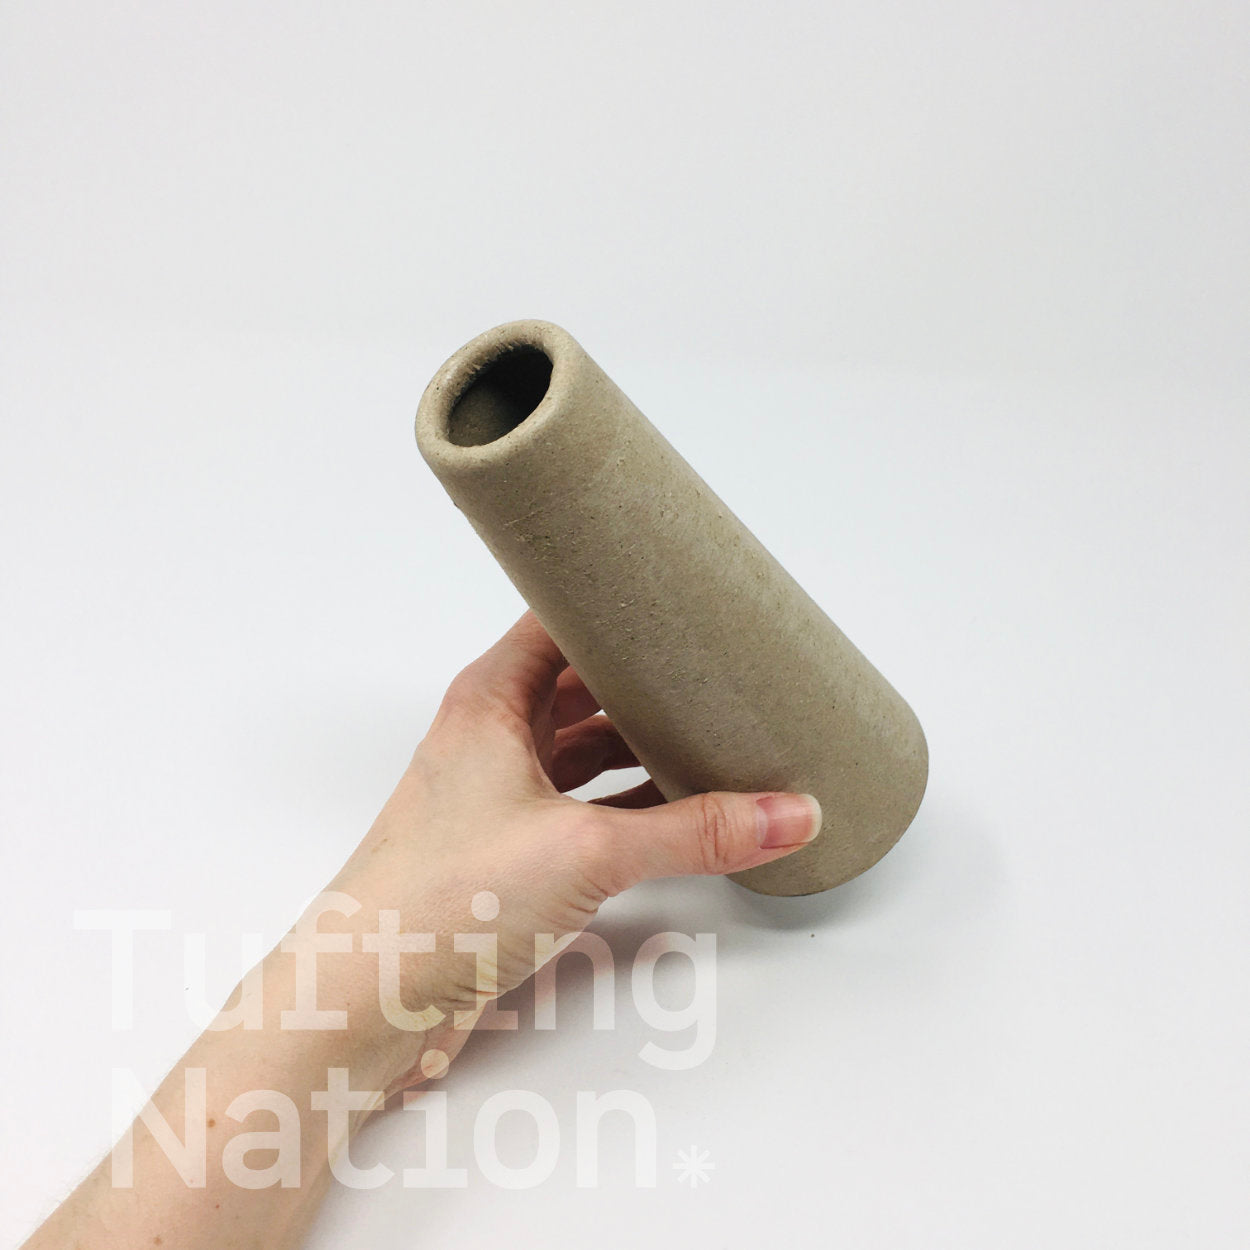 Cardboard Yarn Cones for Rug Tufting  | TuftingNation Canada